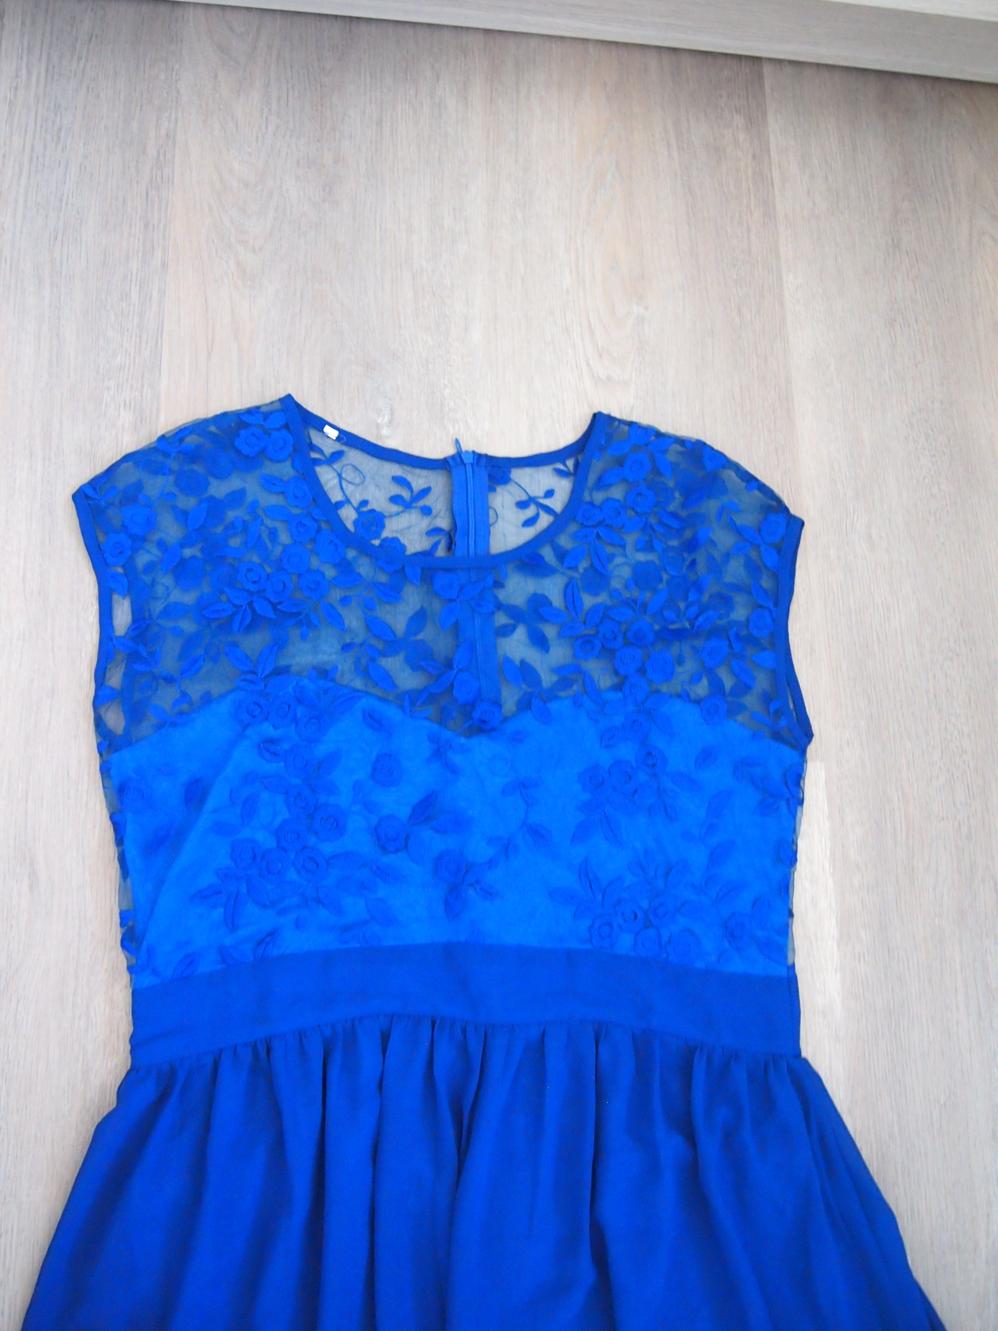 Dlouhé modré šaty (královská modř) - Obrázek č. 4